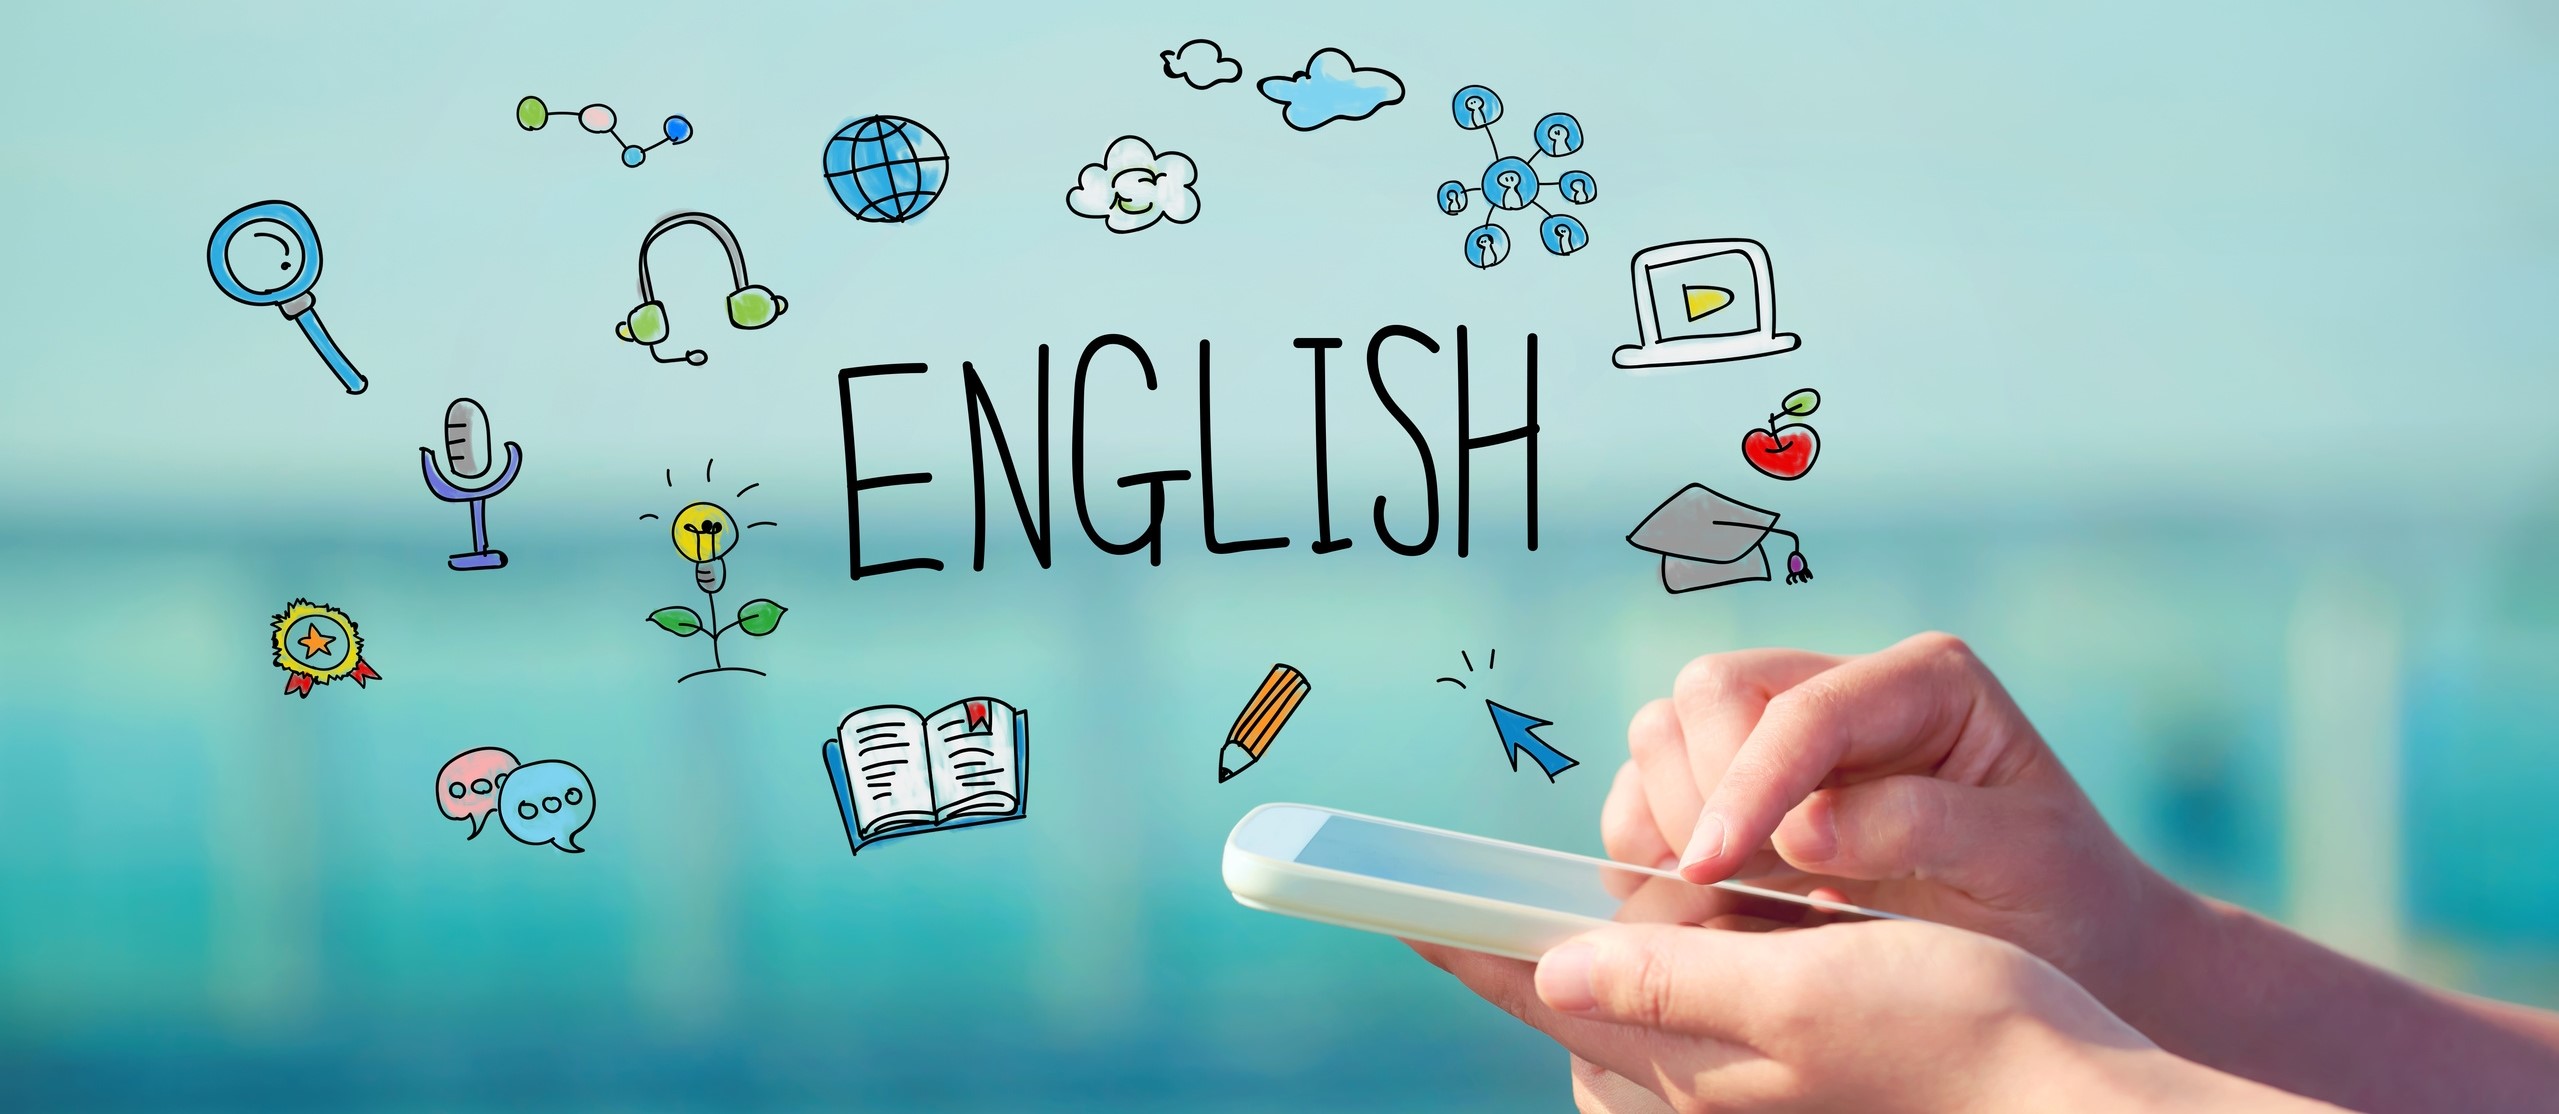 TIPS para aprender inglés de una vez por todas | Inglésparaprincipiantes